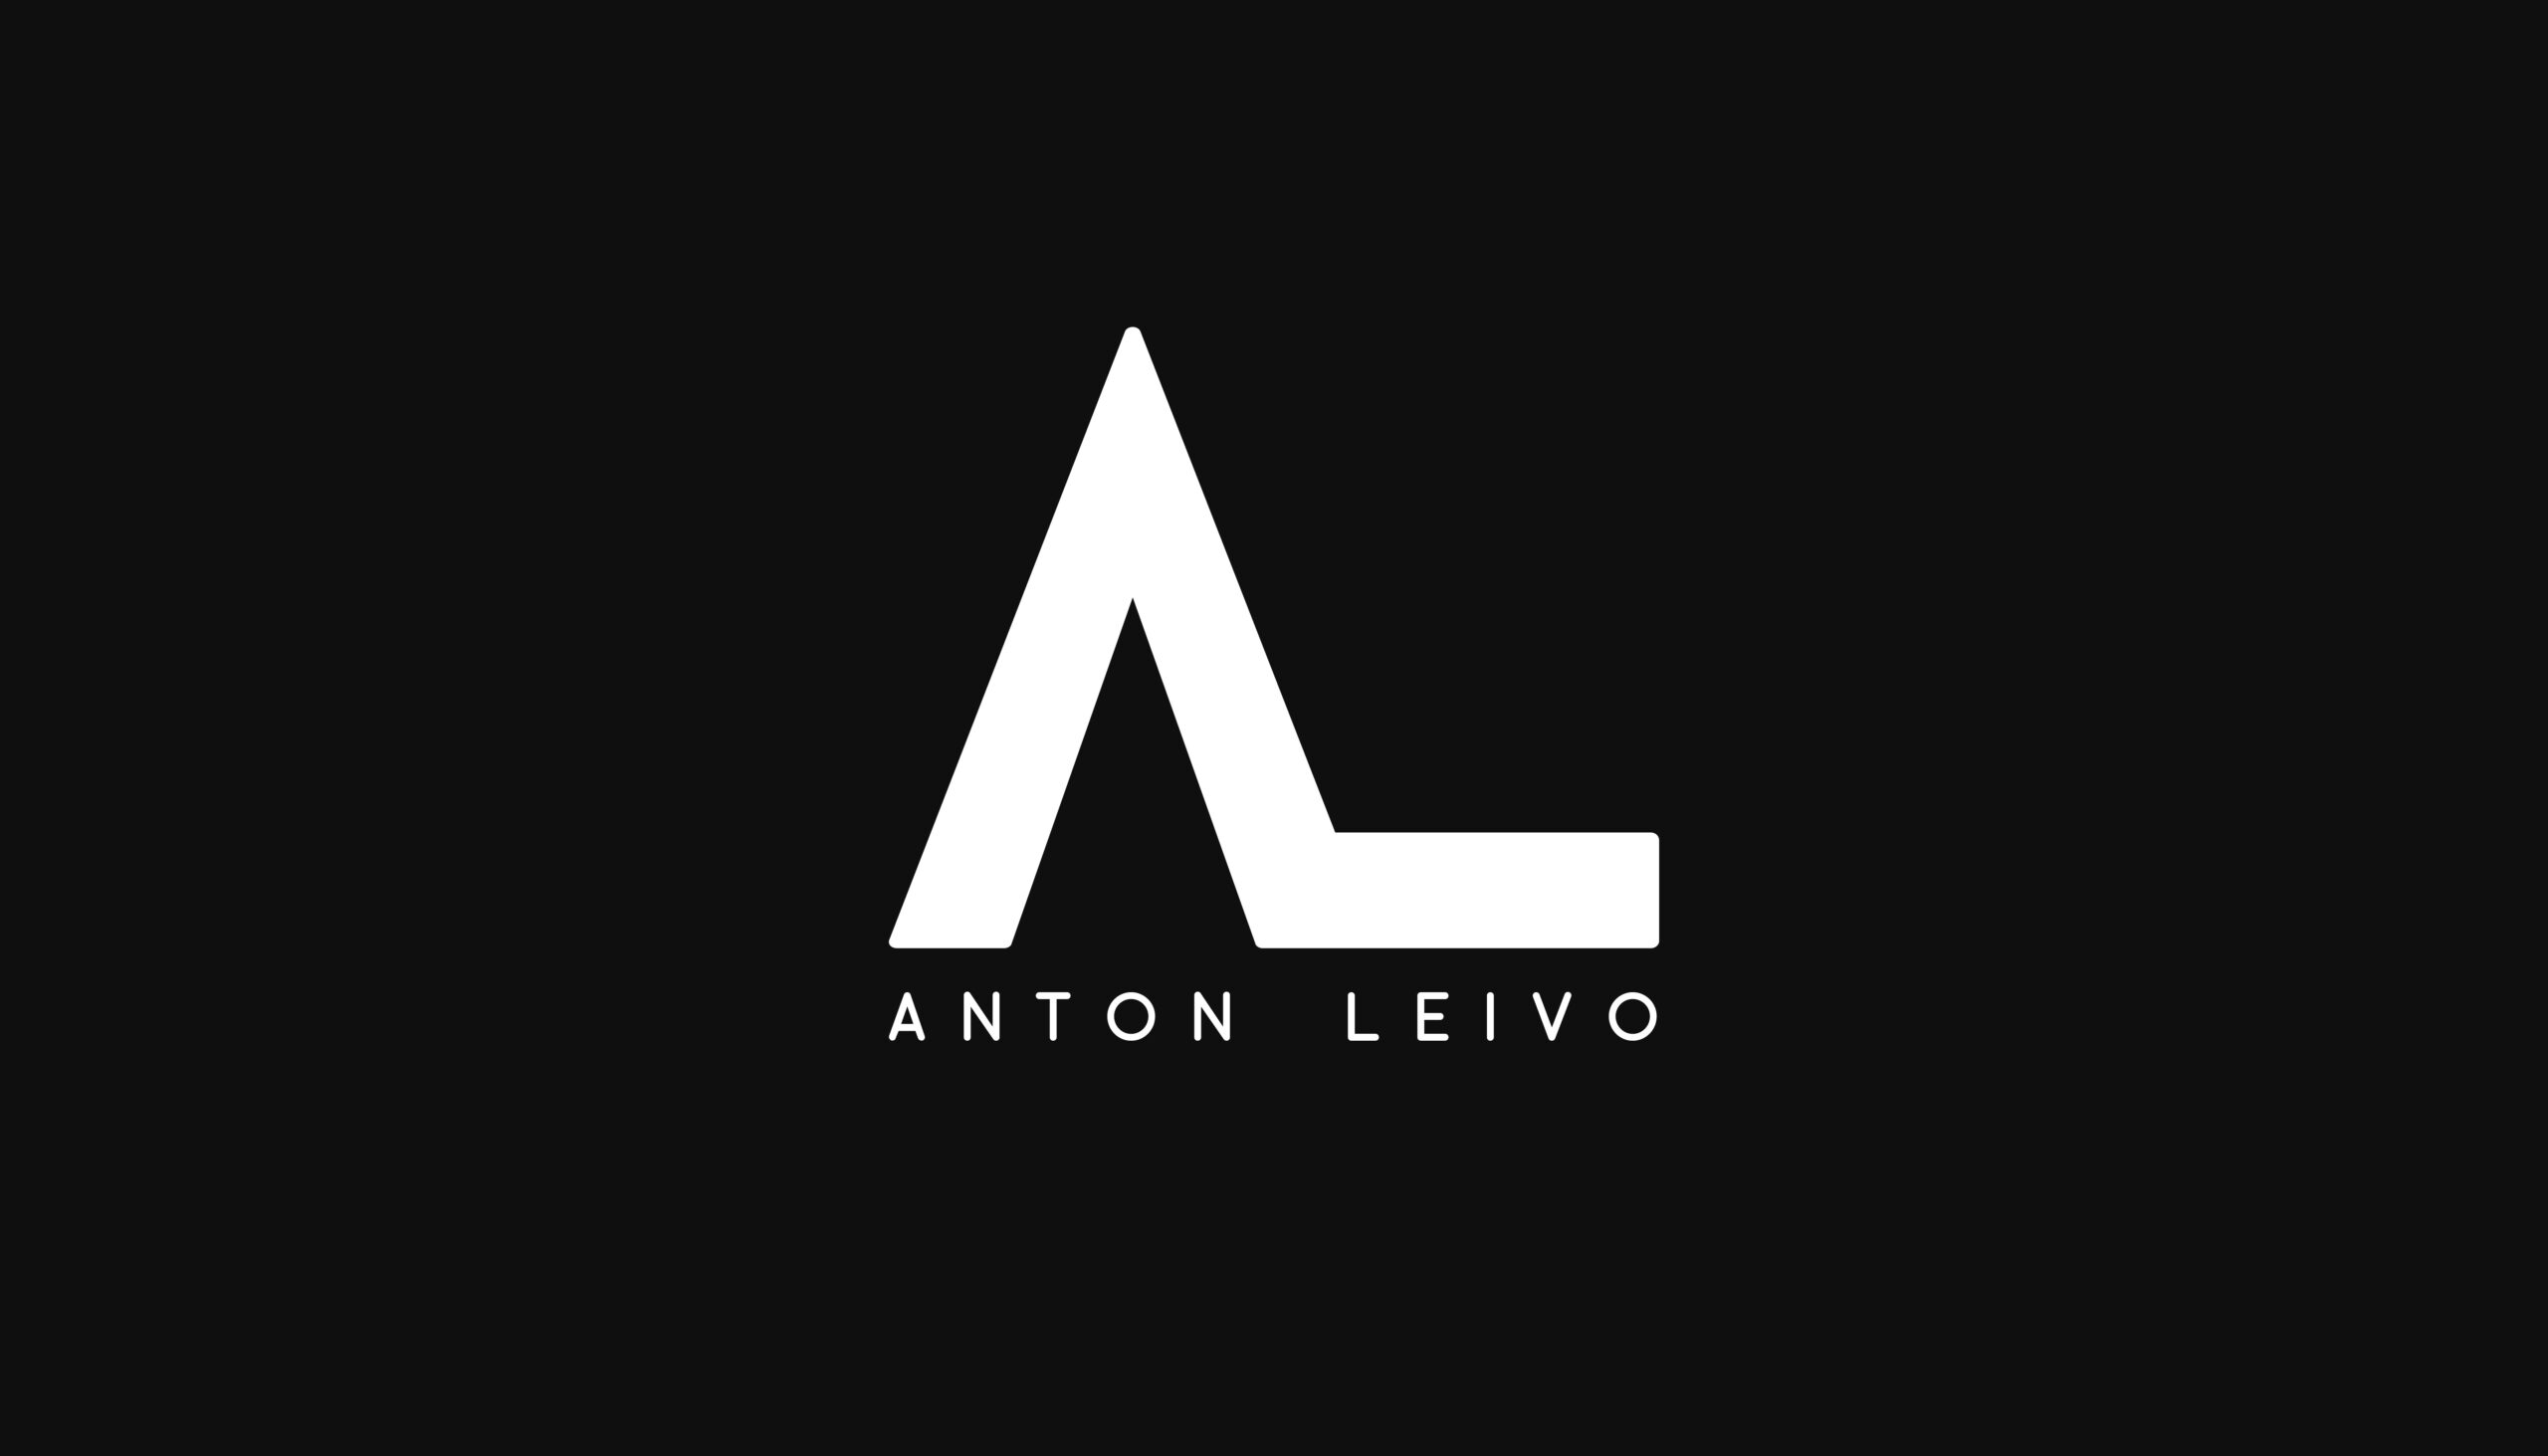 Anton Leivo